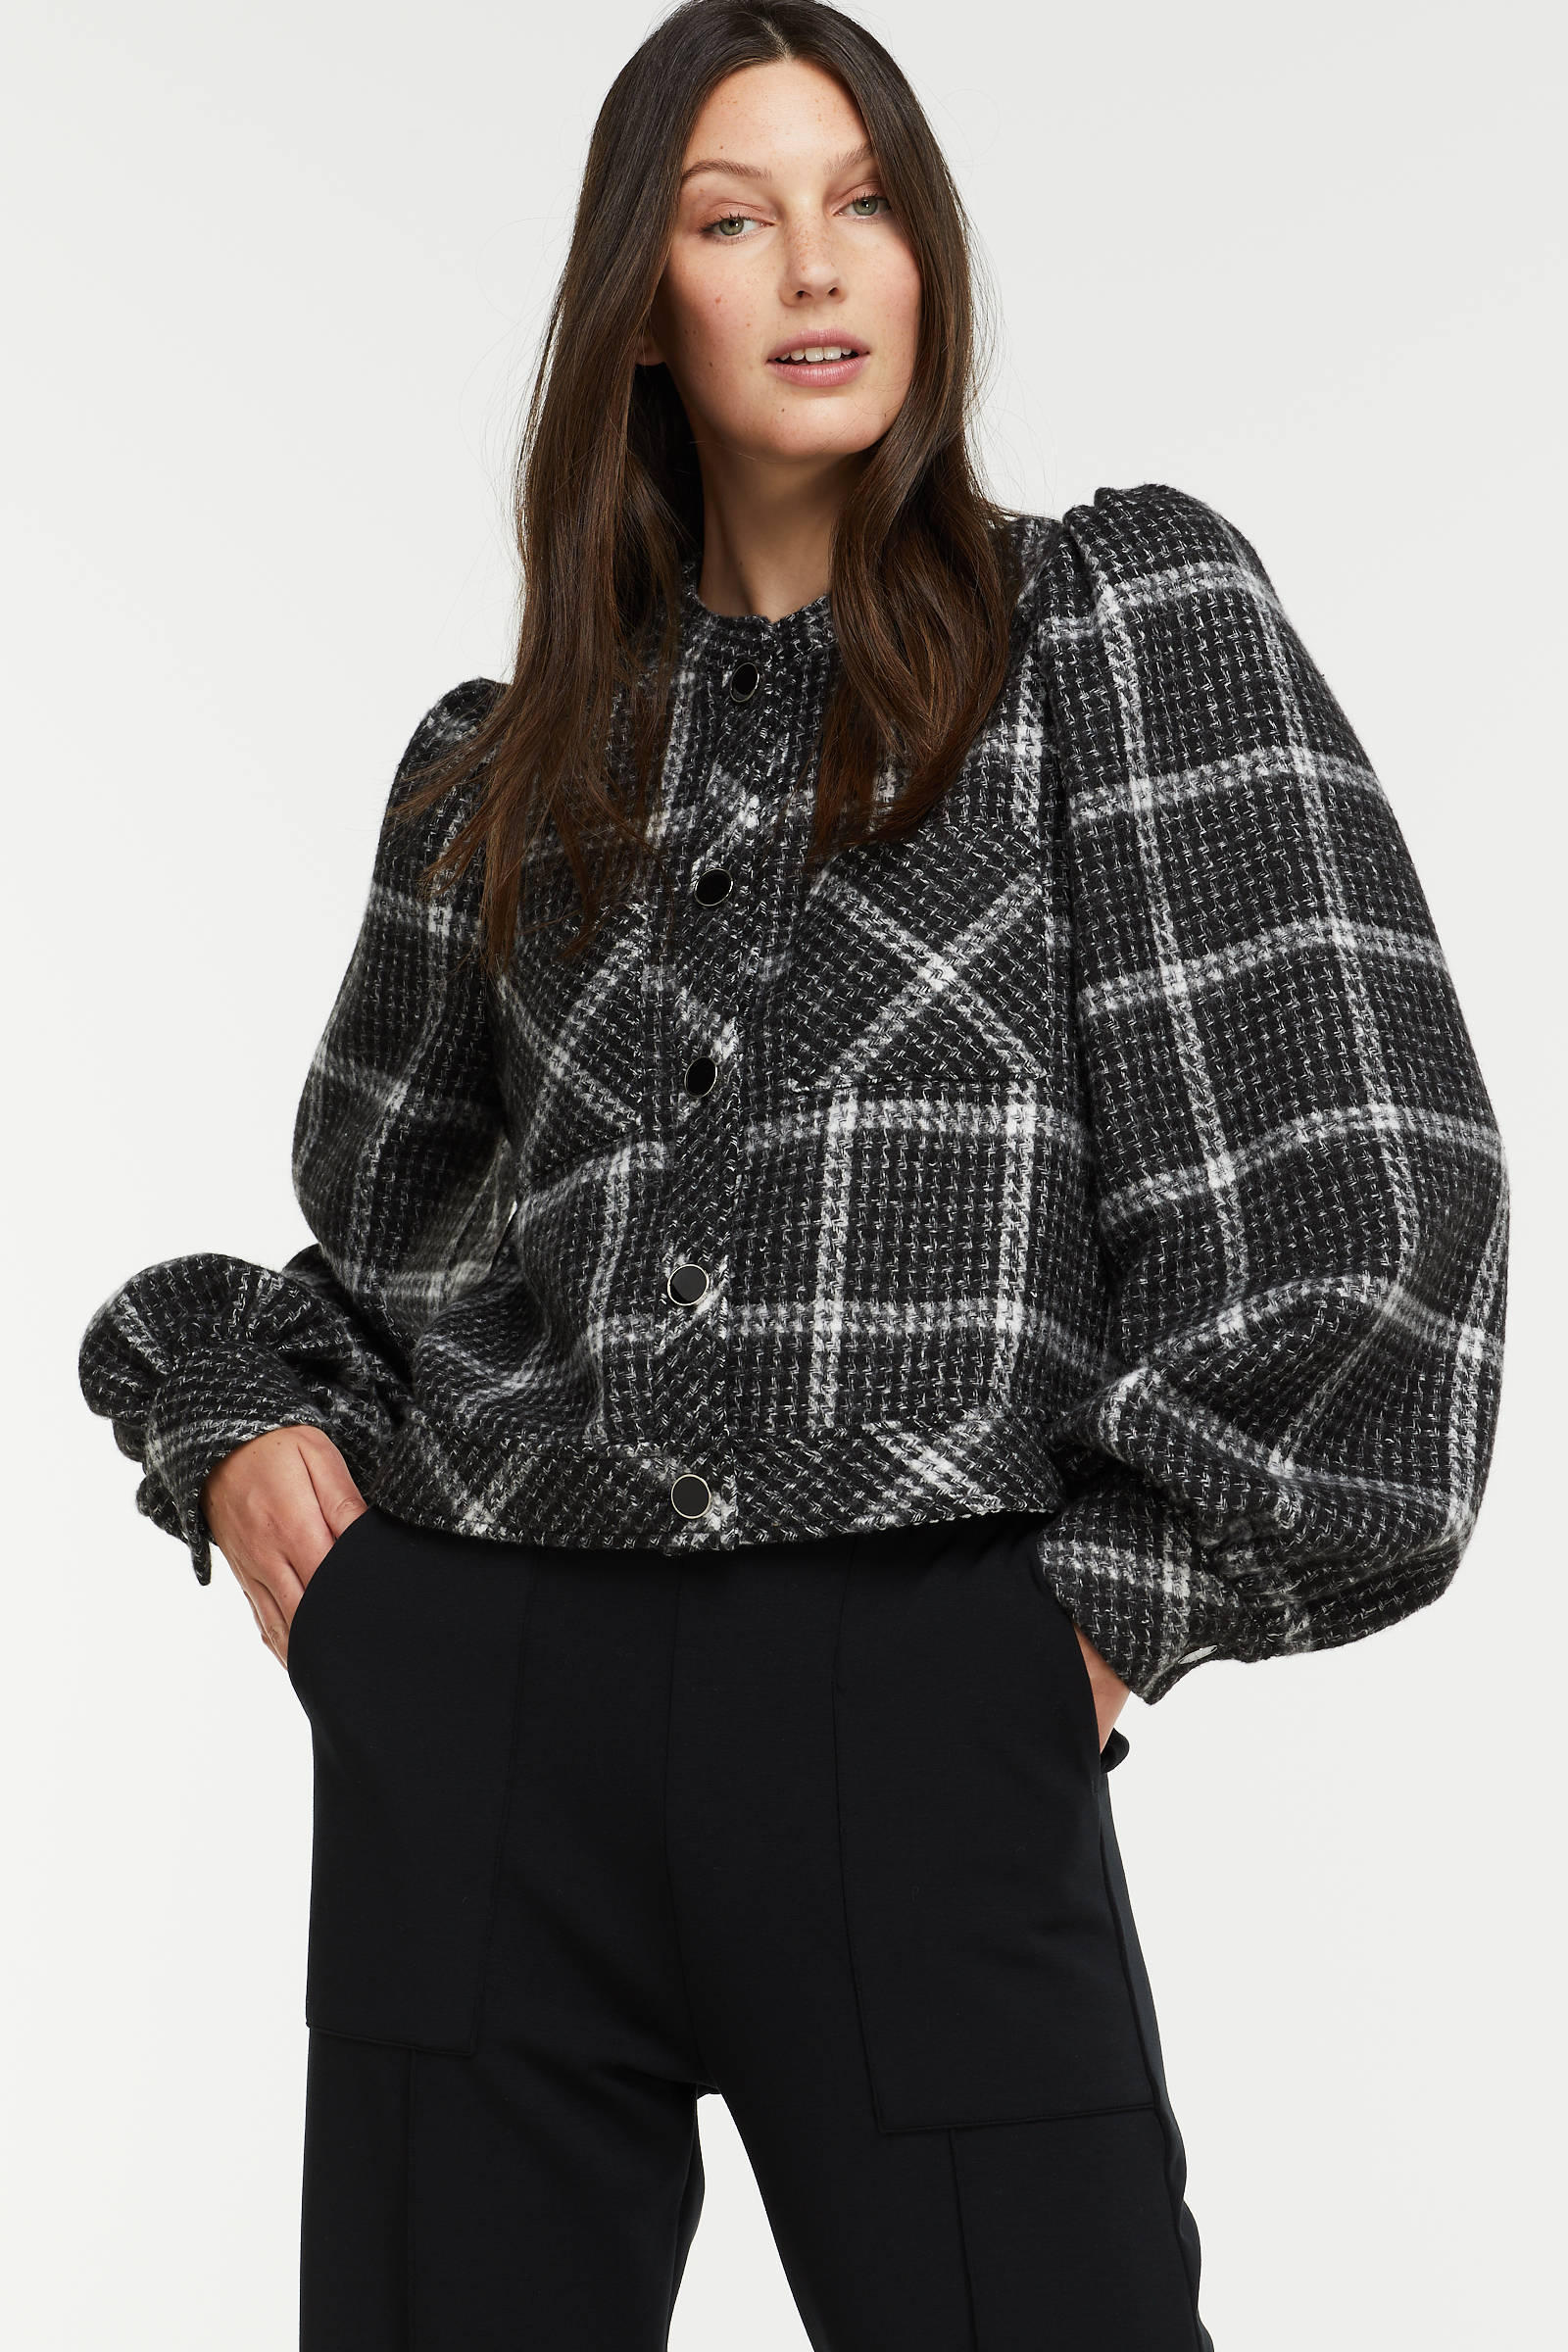 Summum Woman geruite jas zwart/wit online kopen